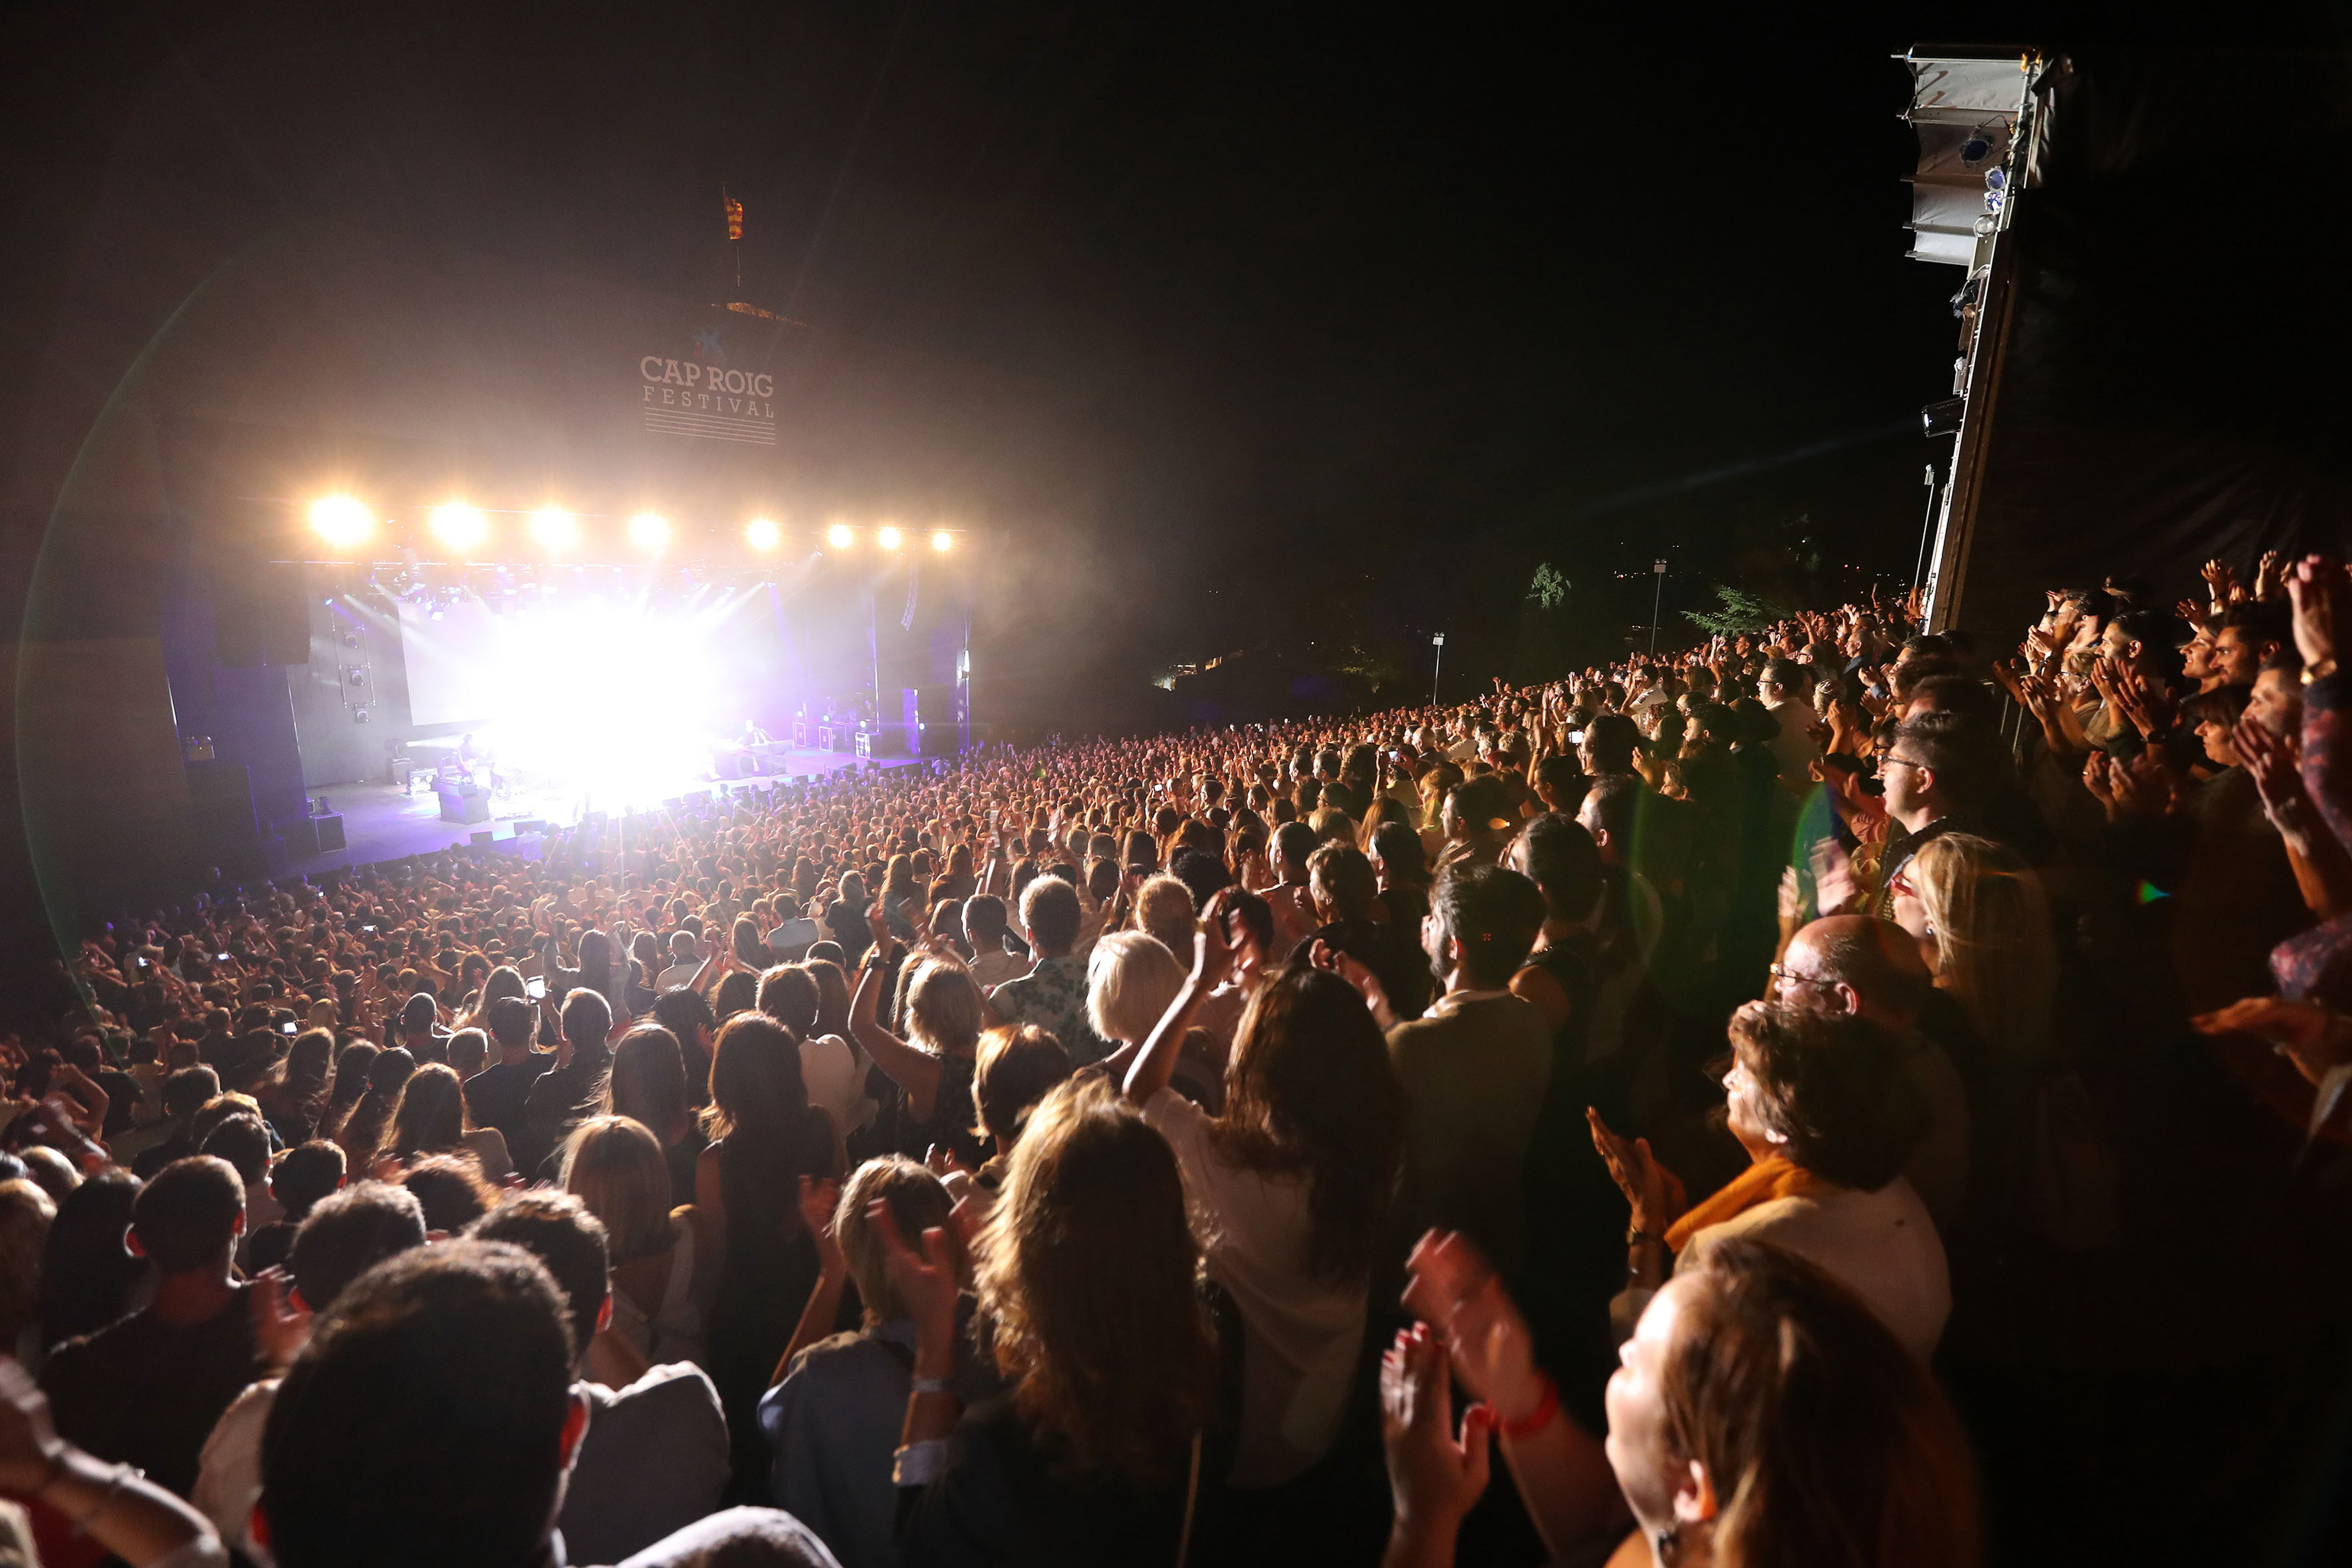 Costa Brava's Cap Roig festival during a concert